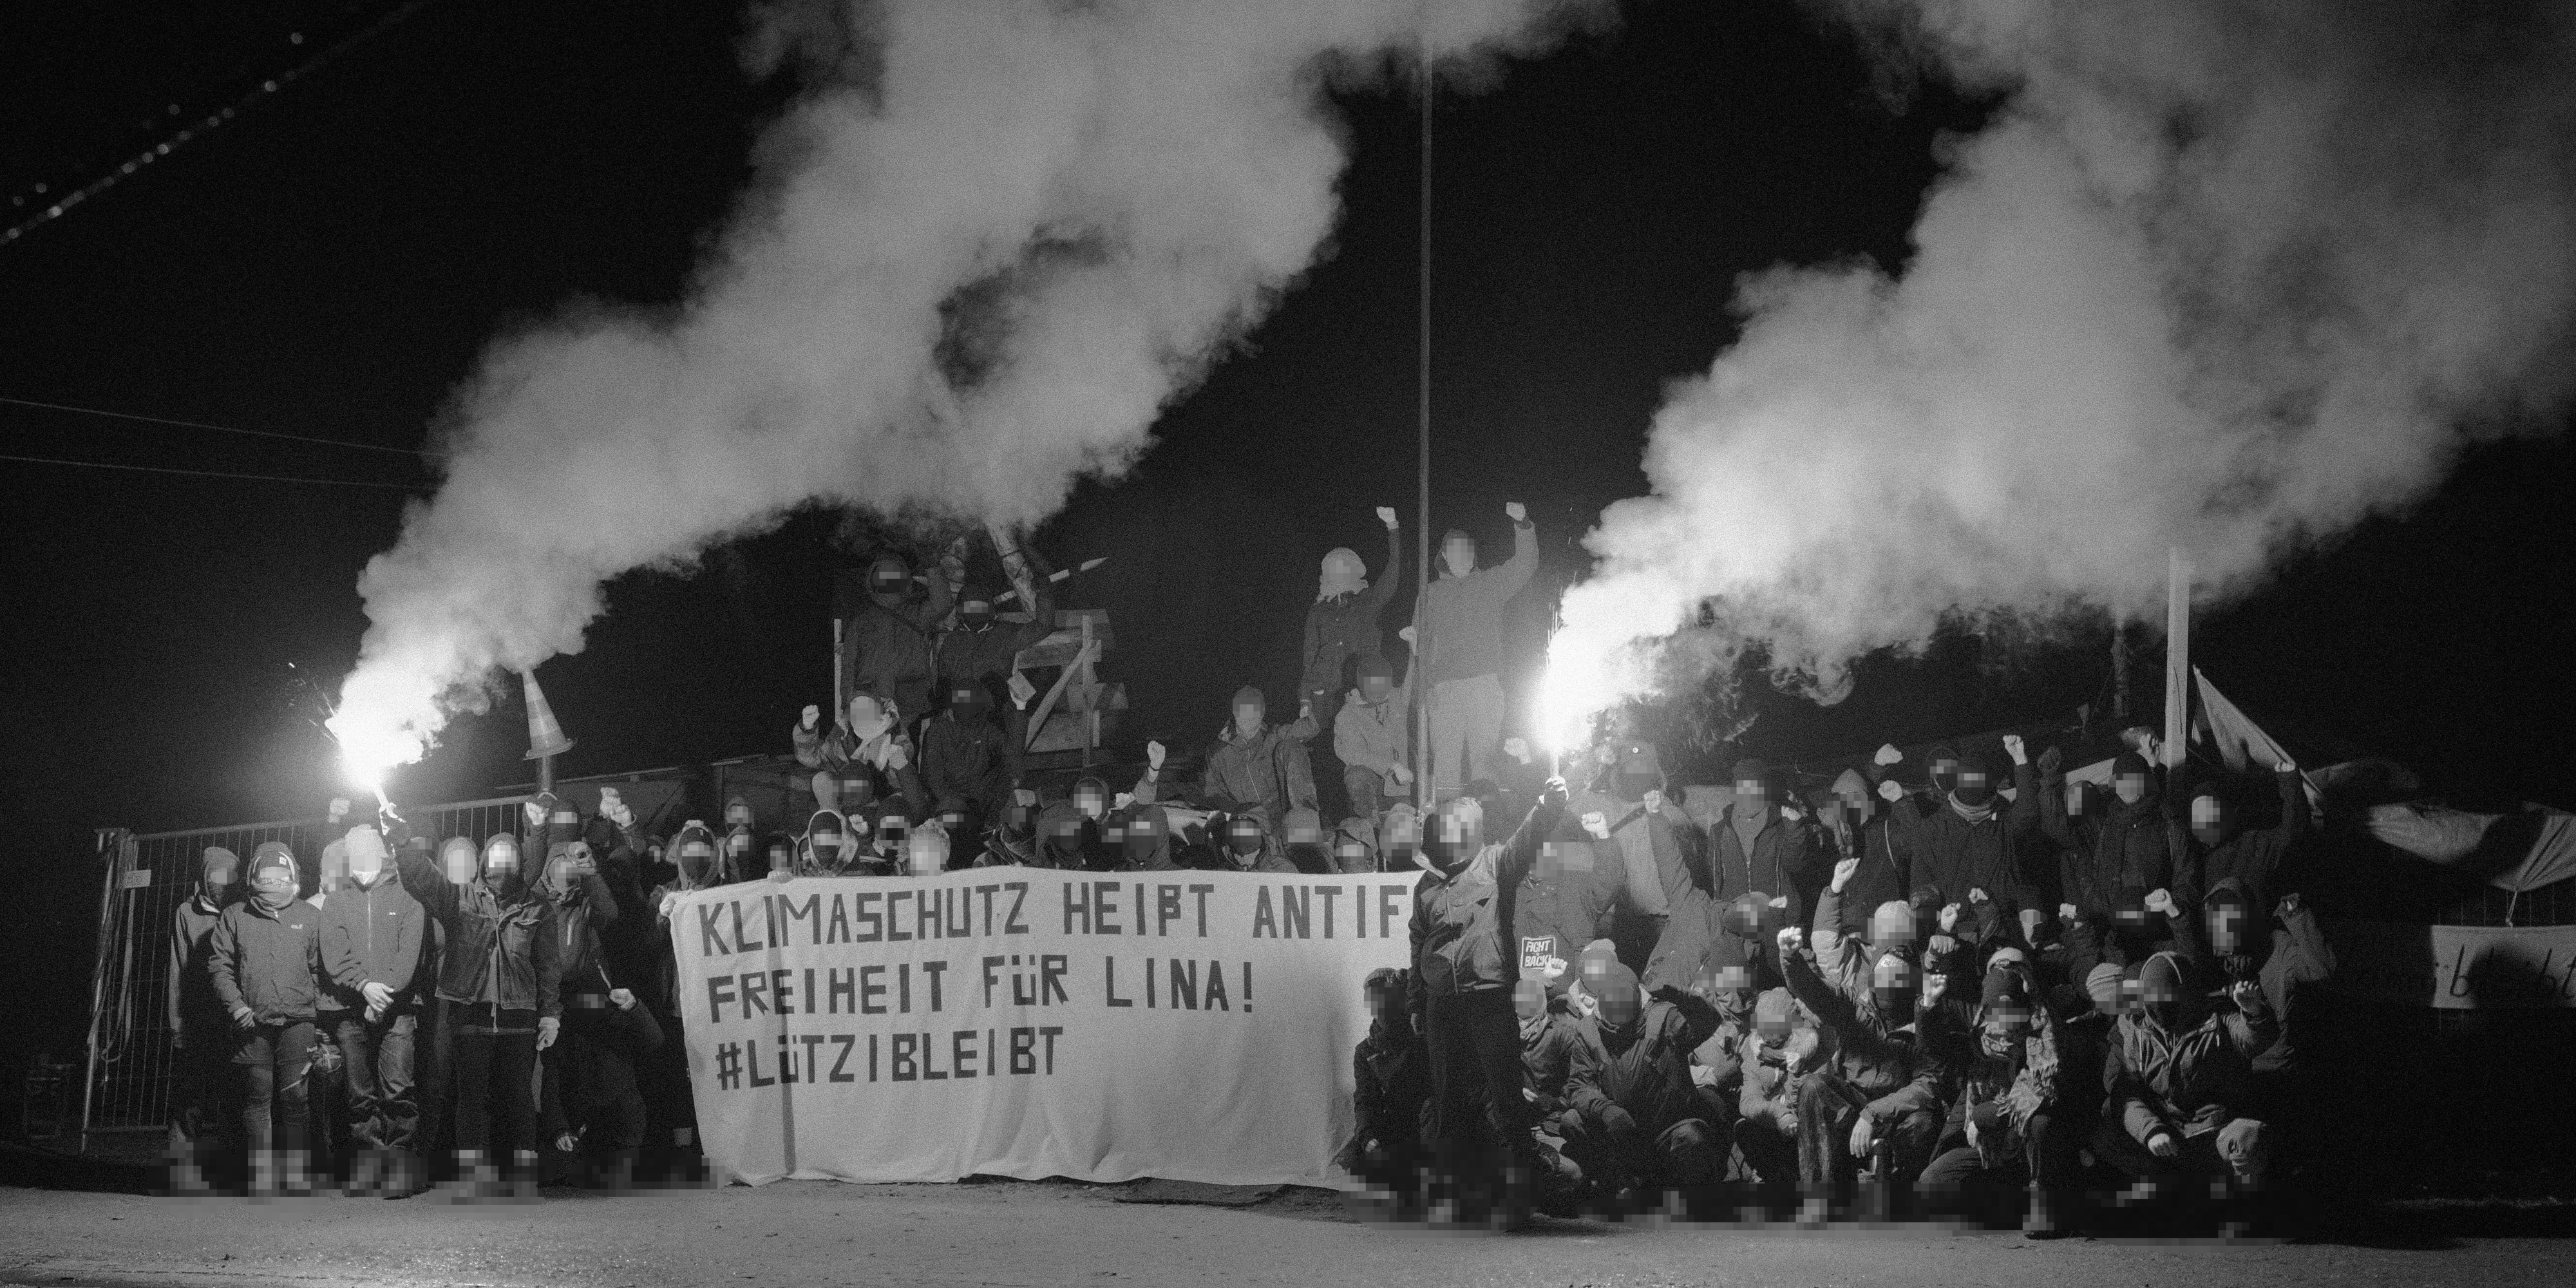 You are currently viewing #Lützibleibt: Klimaschutz heißt Antifa! Freiheit für Lina!